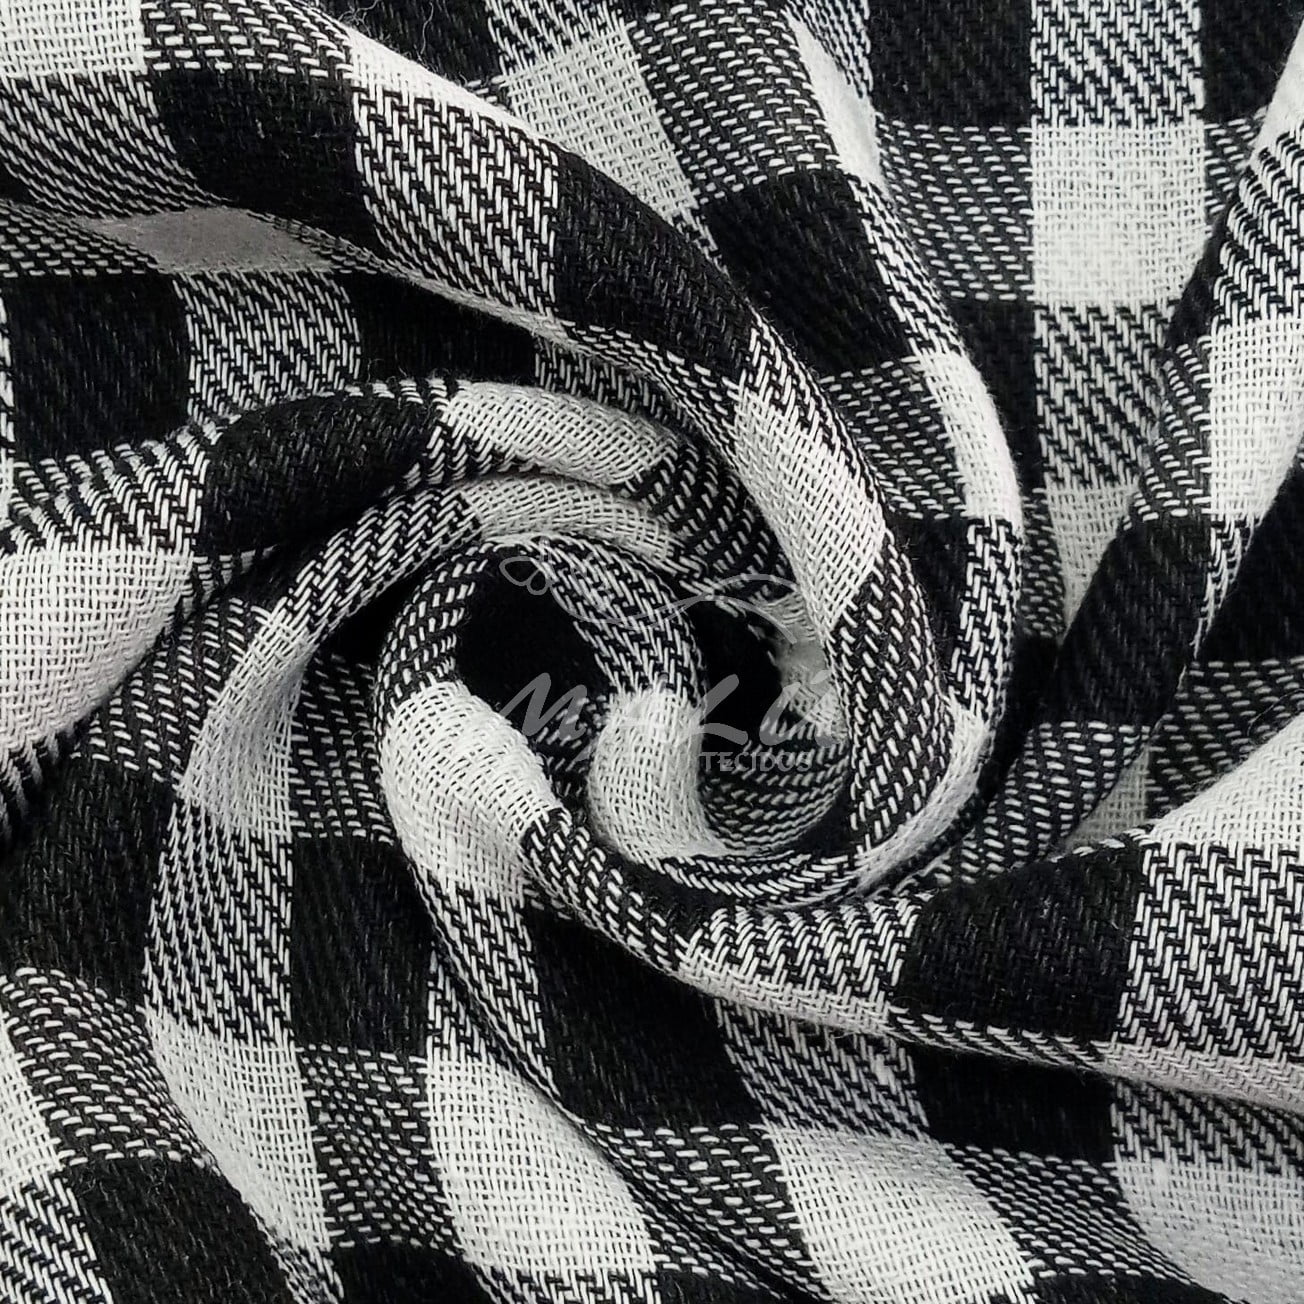 Tecido flanelado xadrez preto/branco - Maximus Tecido